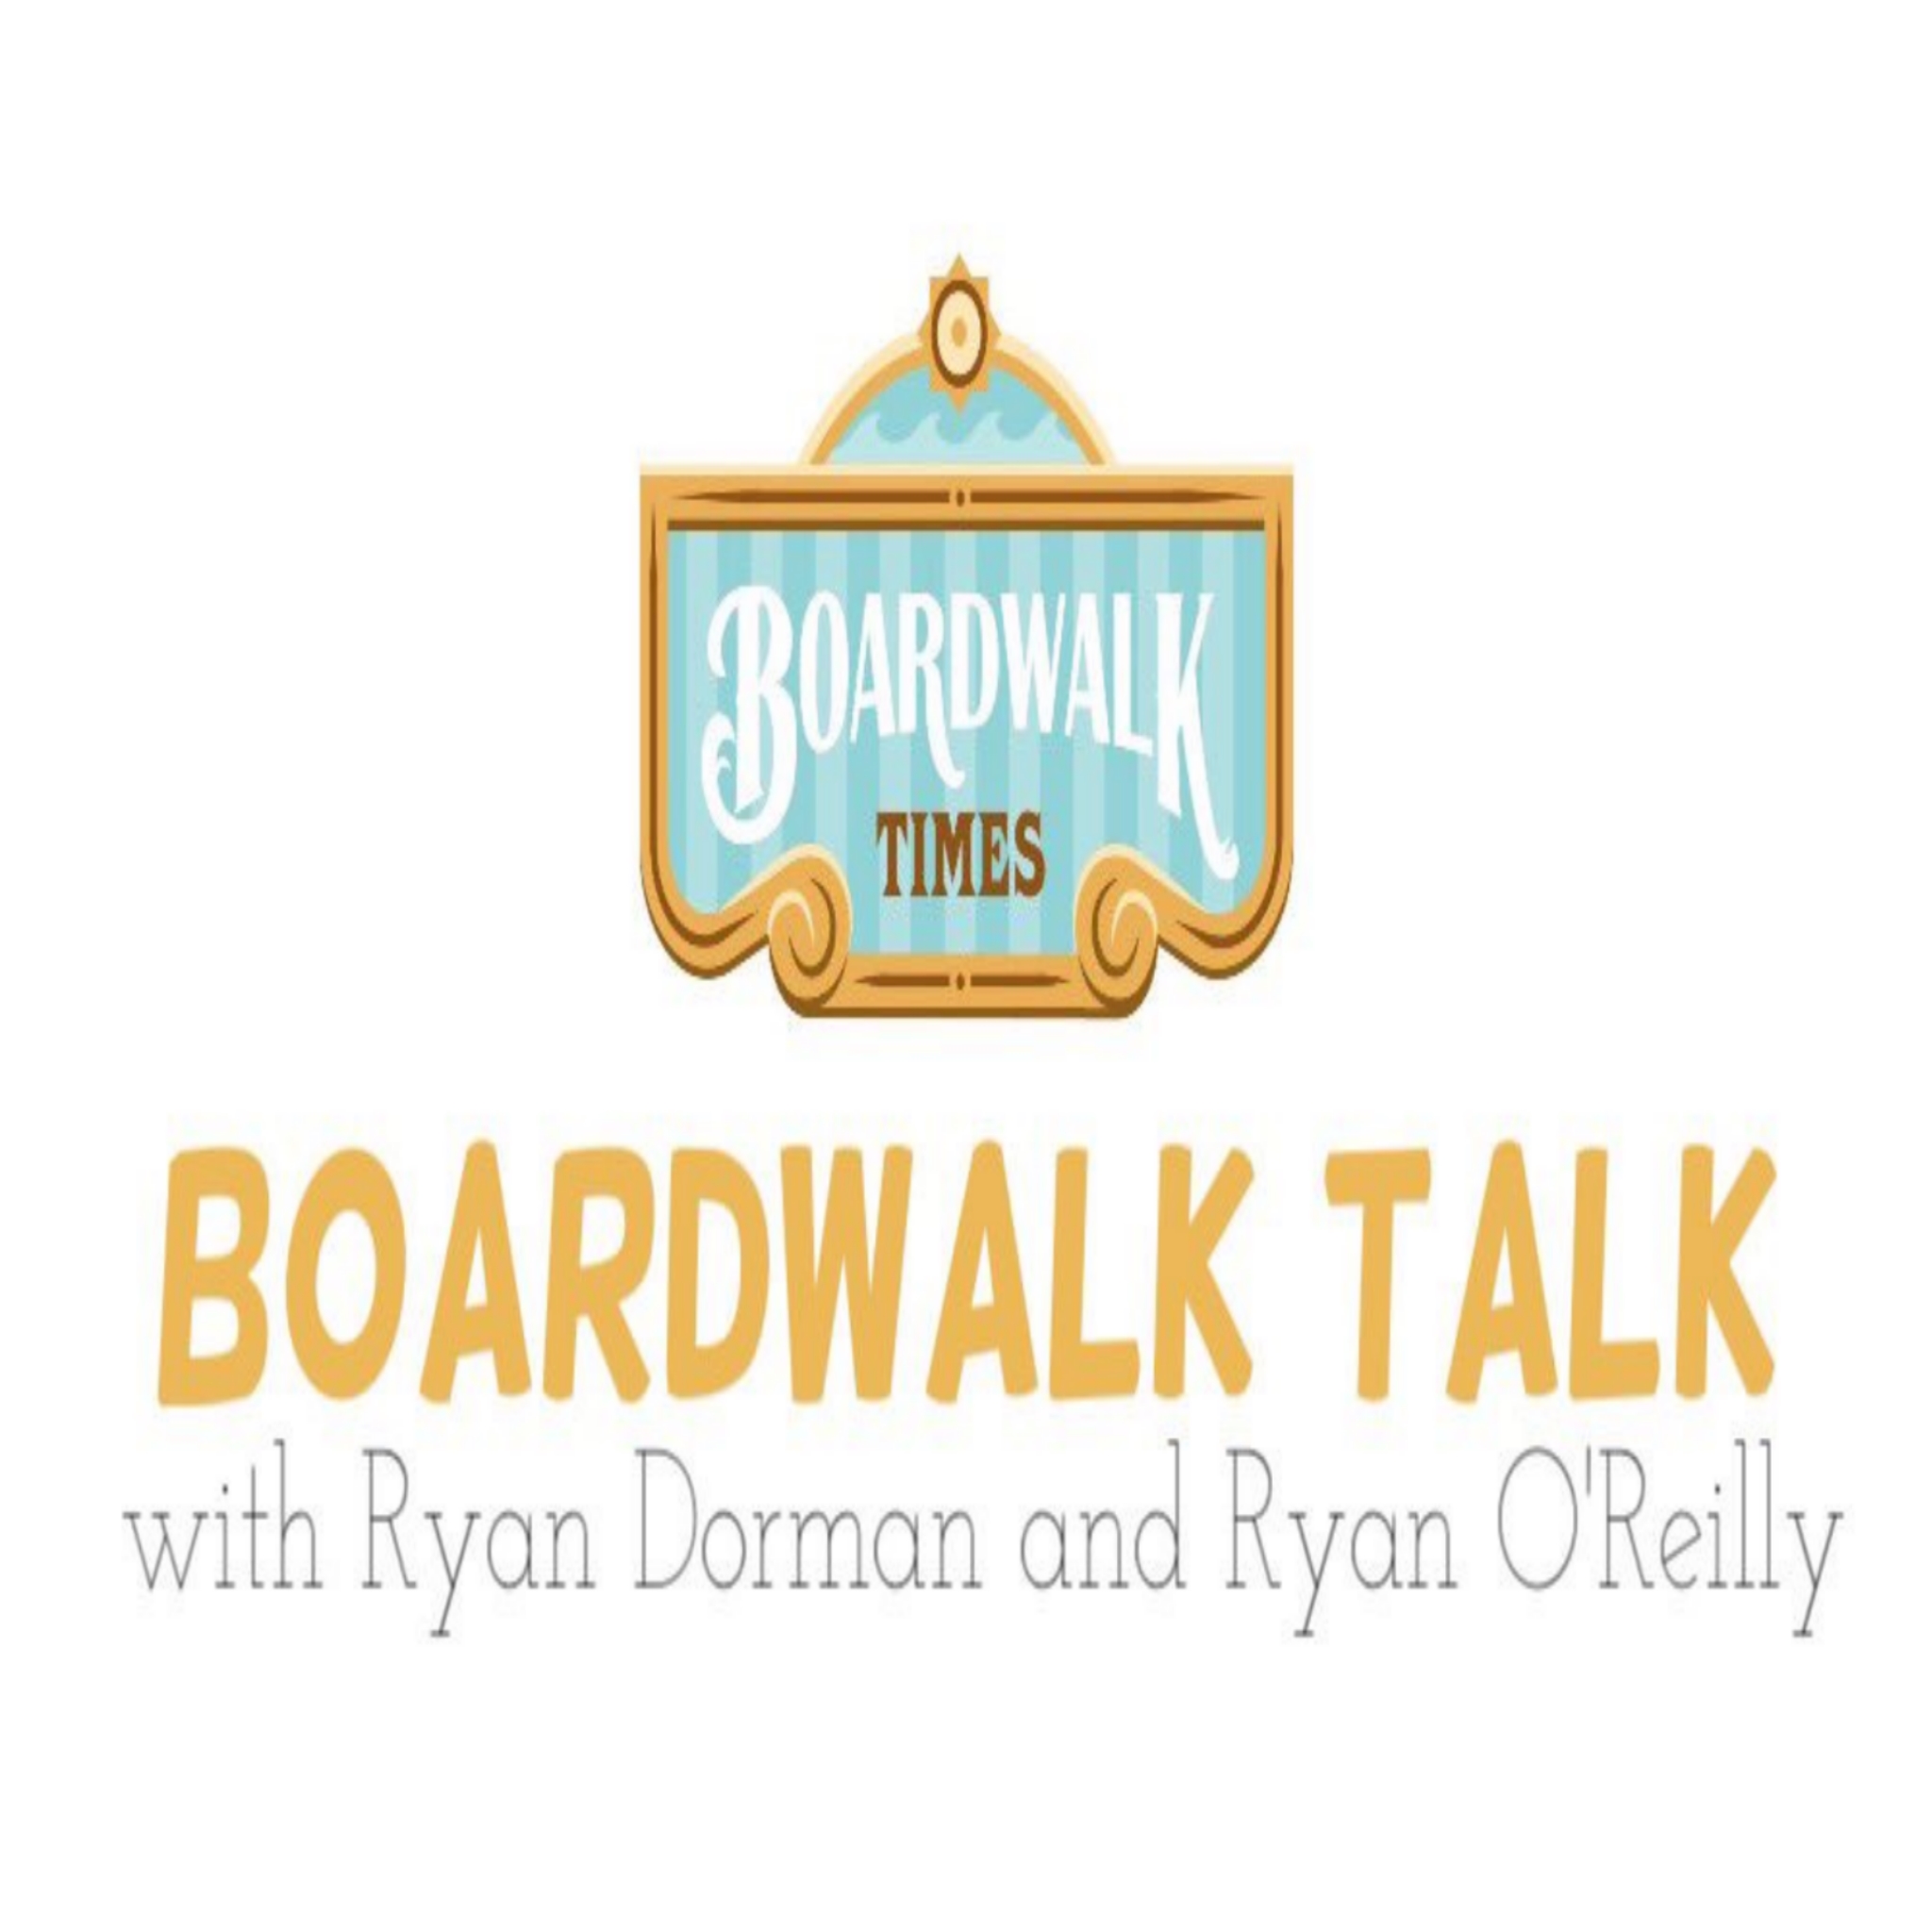 Boardwalk Talk